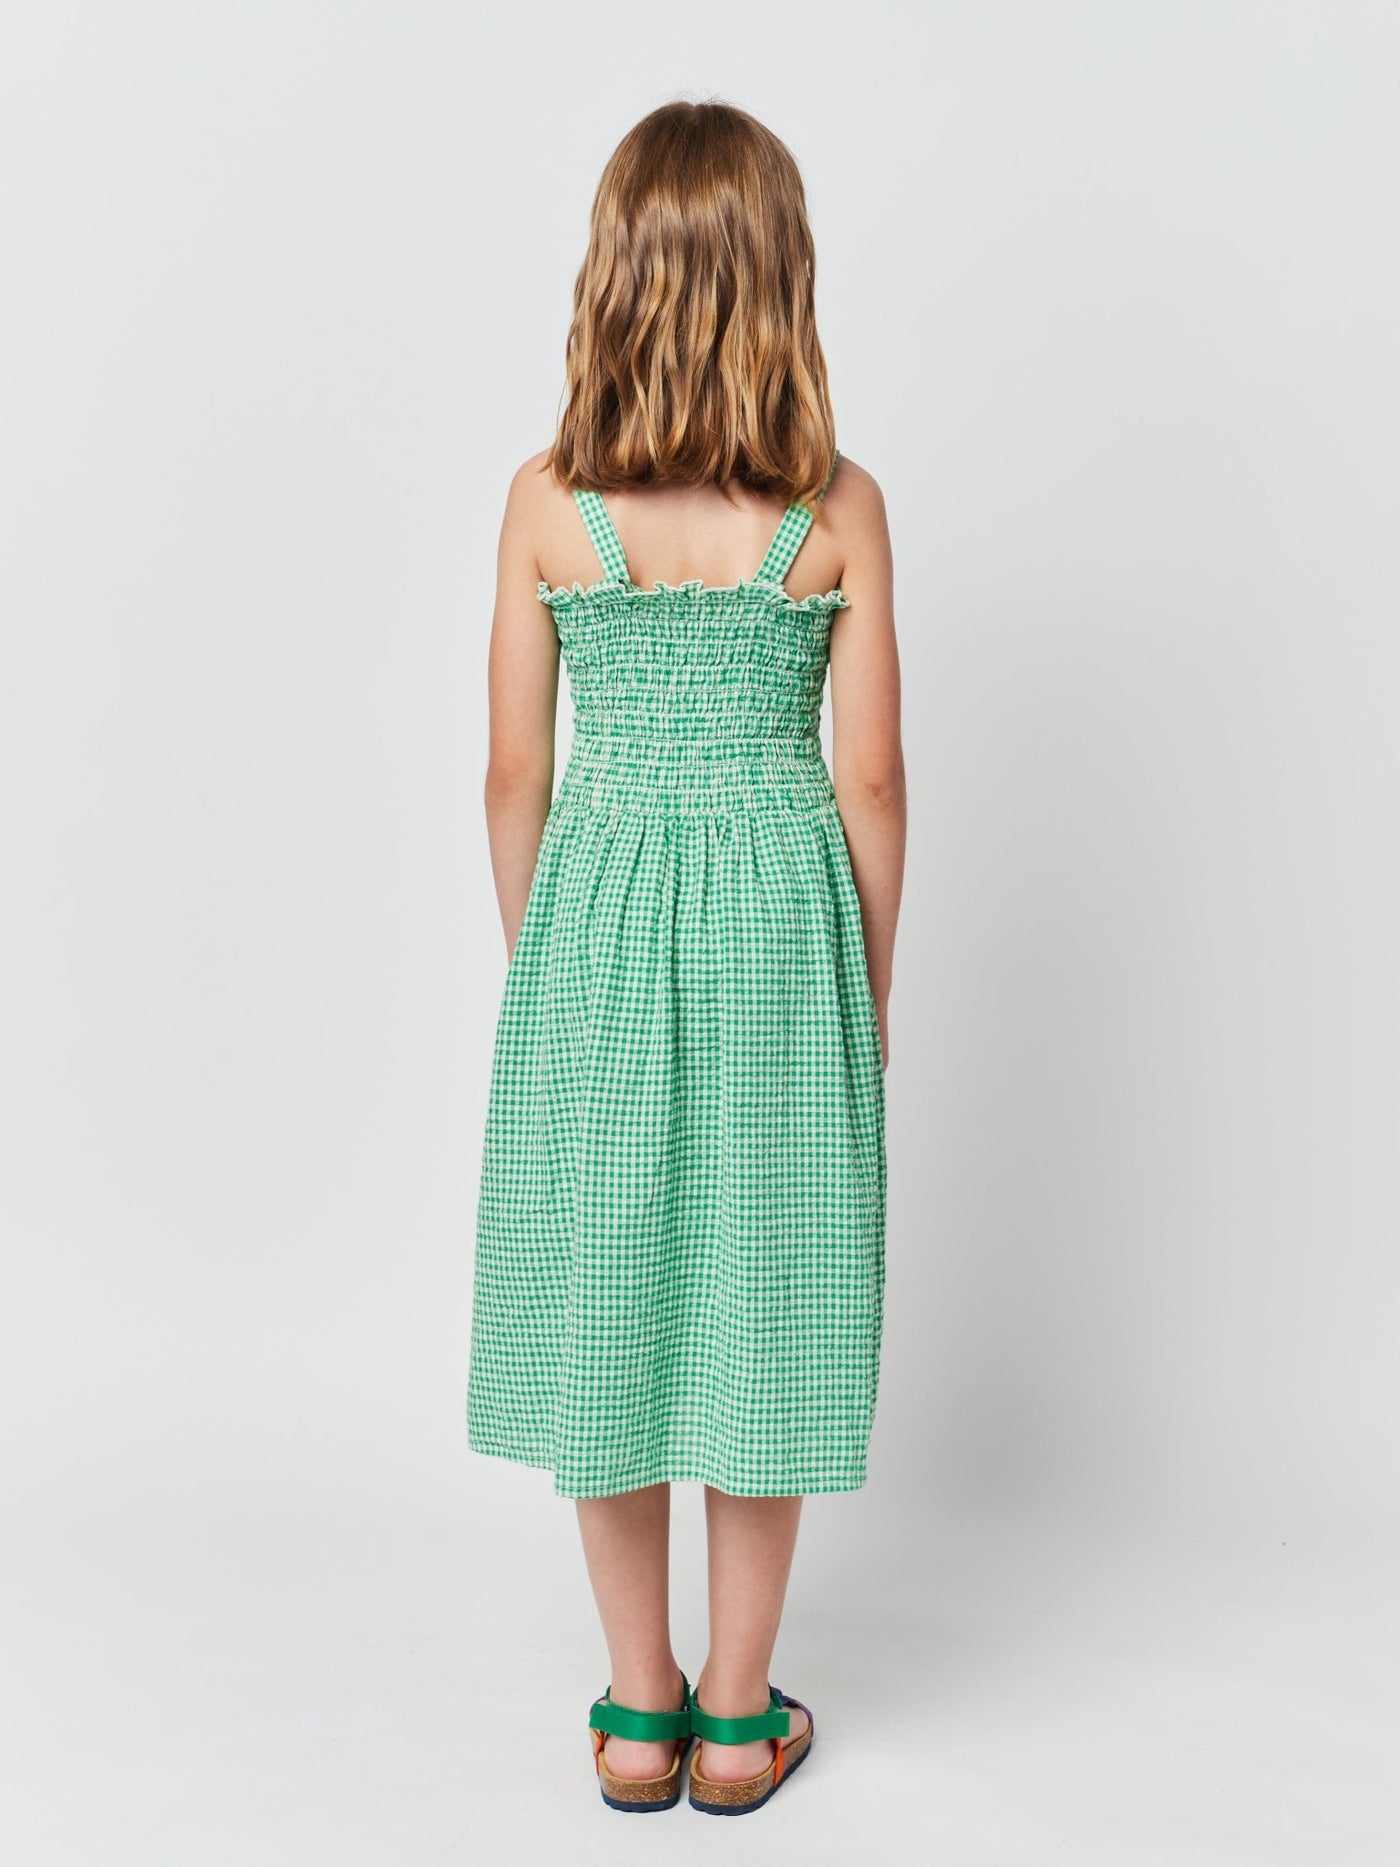 Green Vichy Strap Dress by Bobo Choses - Petite Belle